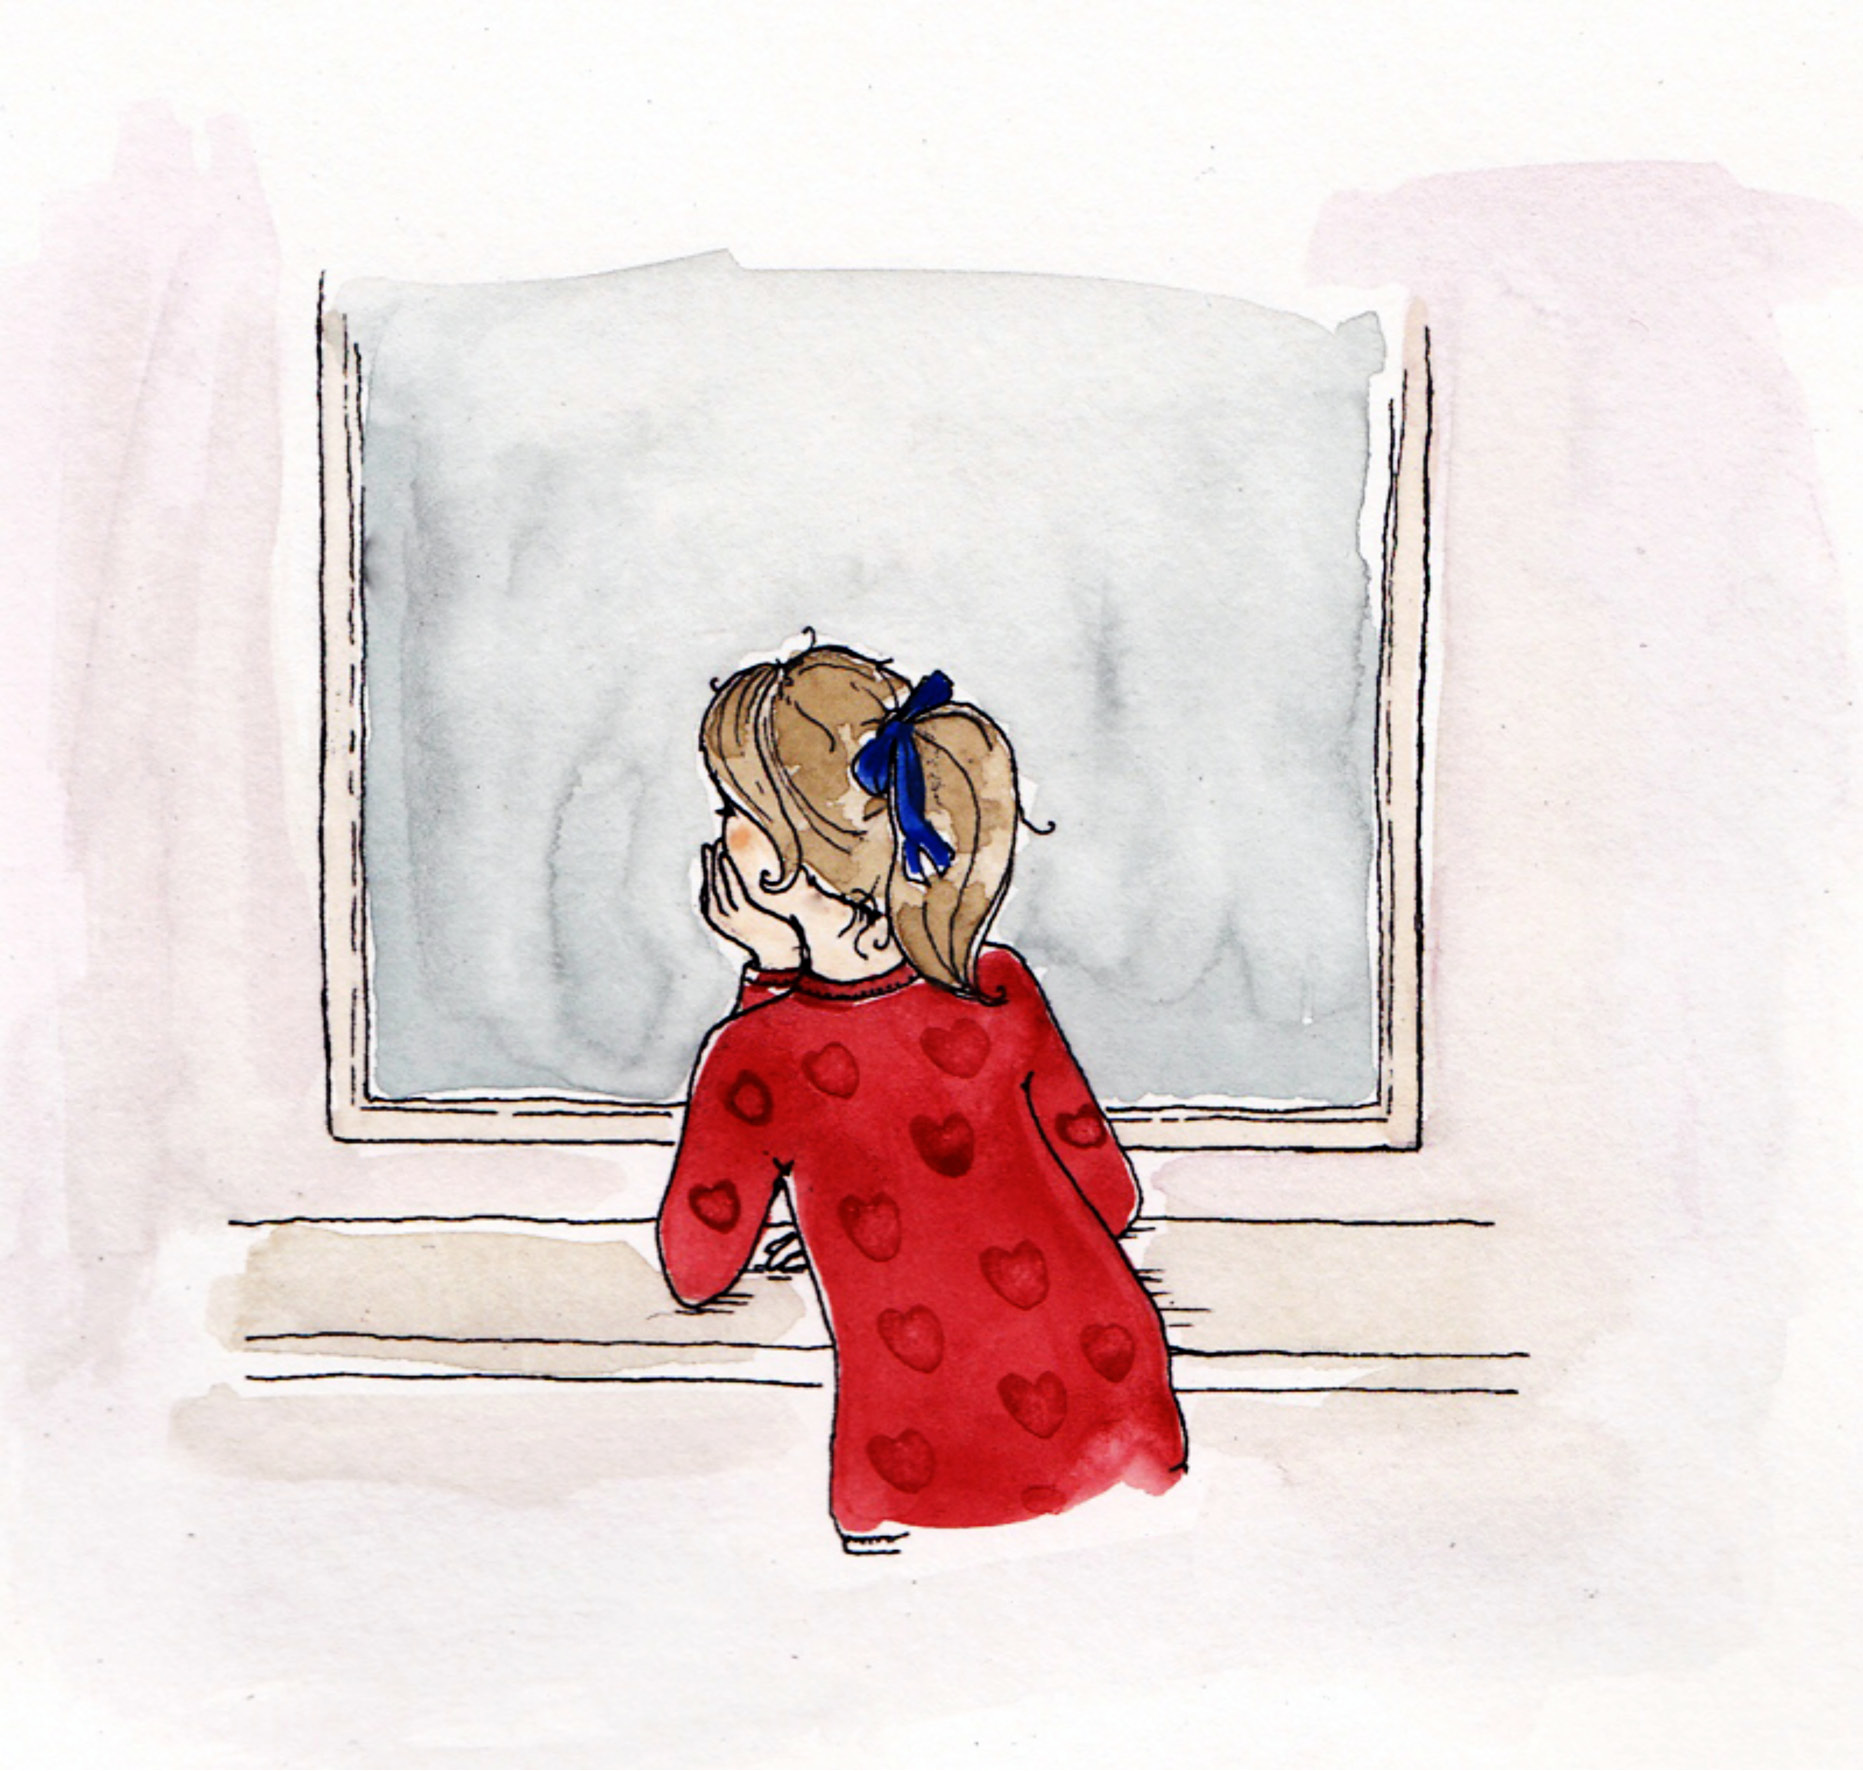 Ze zucht. De tranen staan in haar ogen. Ze mist haar oude kamer nu al. En haar vriendinnen ook. Lisa kijkt uit het raam.